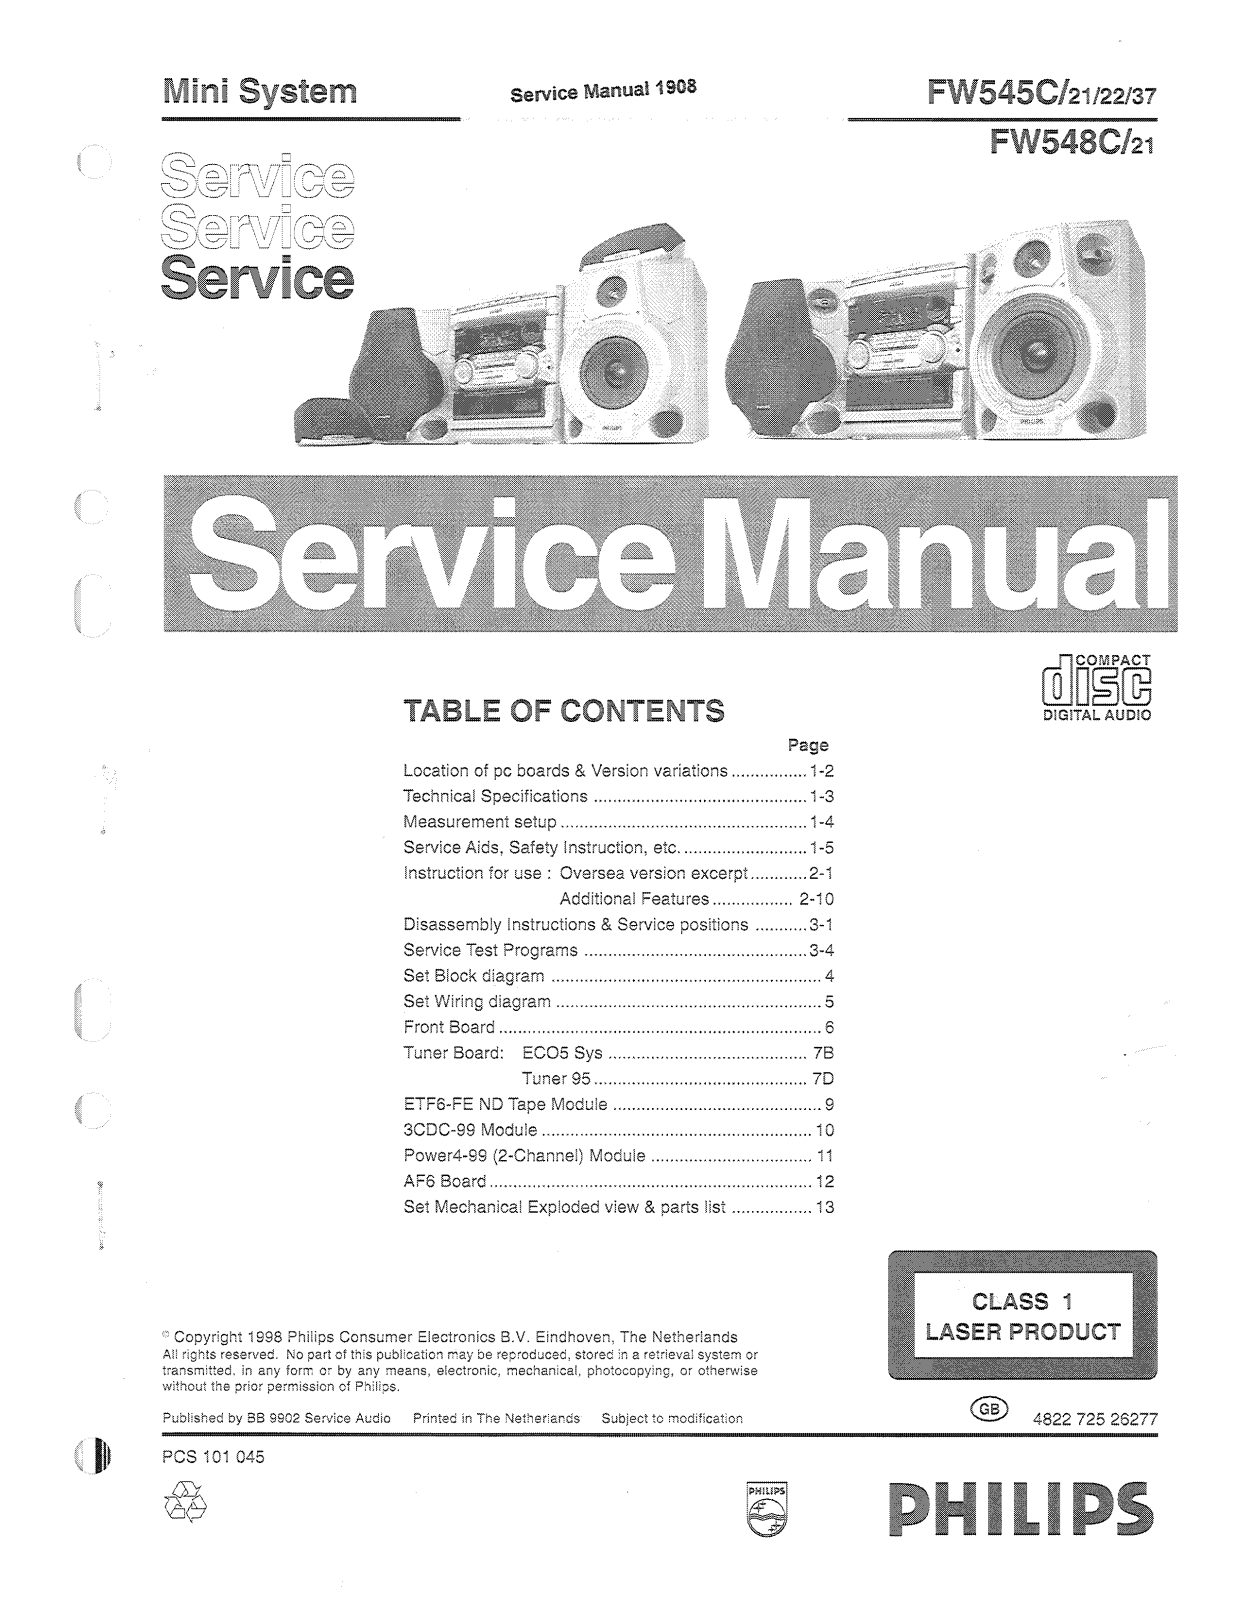 Philips FW-545-C, FW-548-C Service manual